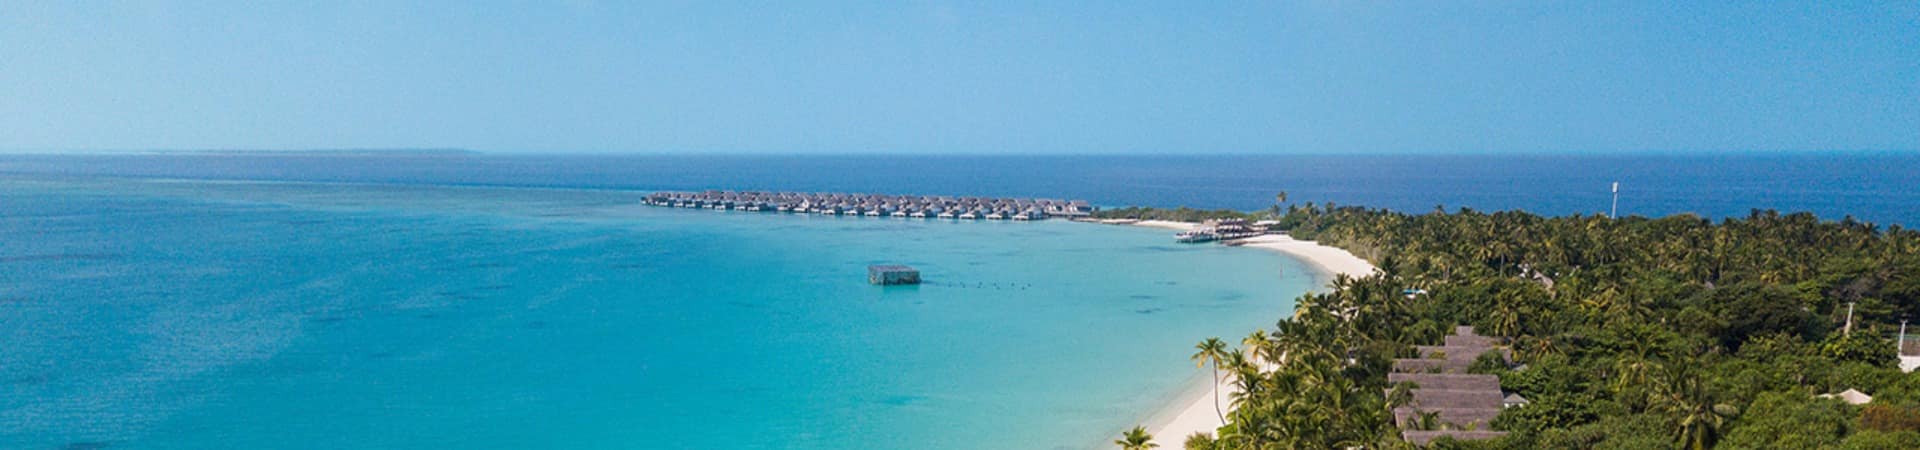 Fairmont maldives sirru fen fushi vista aerea da praia